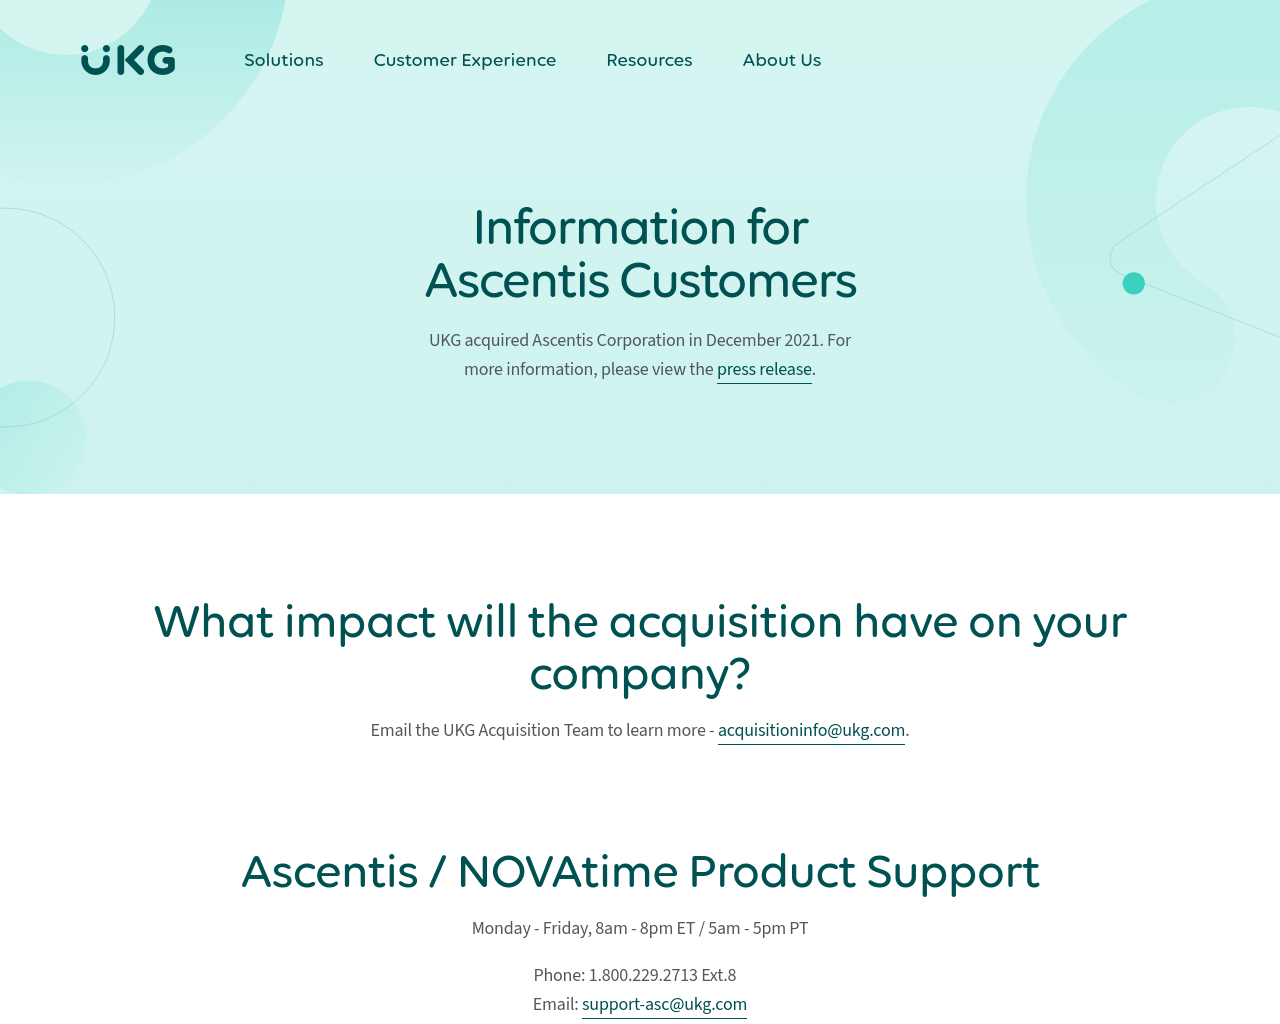 ascentis.com